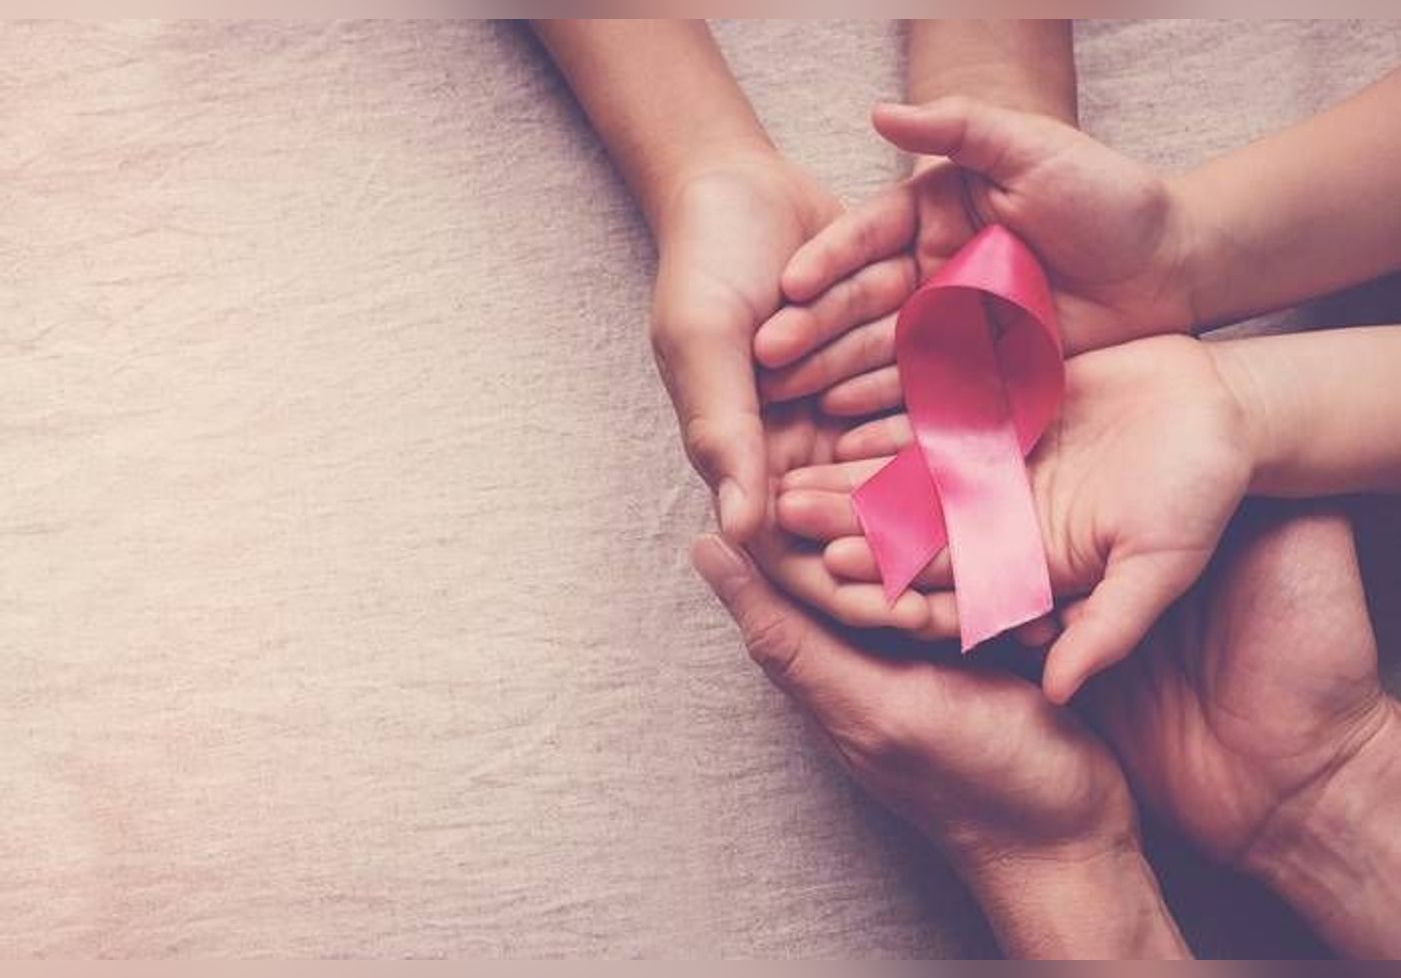 Cancer du sein : une patiente en phase terminale guérie grâce à un essai clinique mené au Royaume-Uni